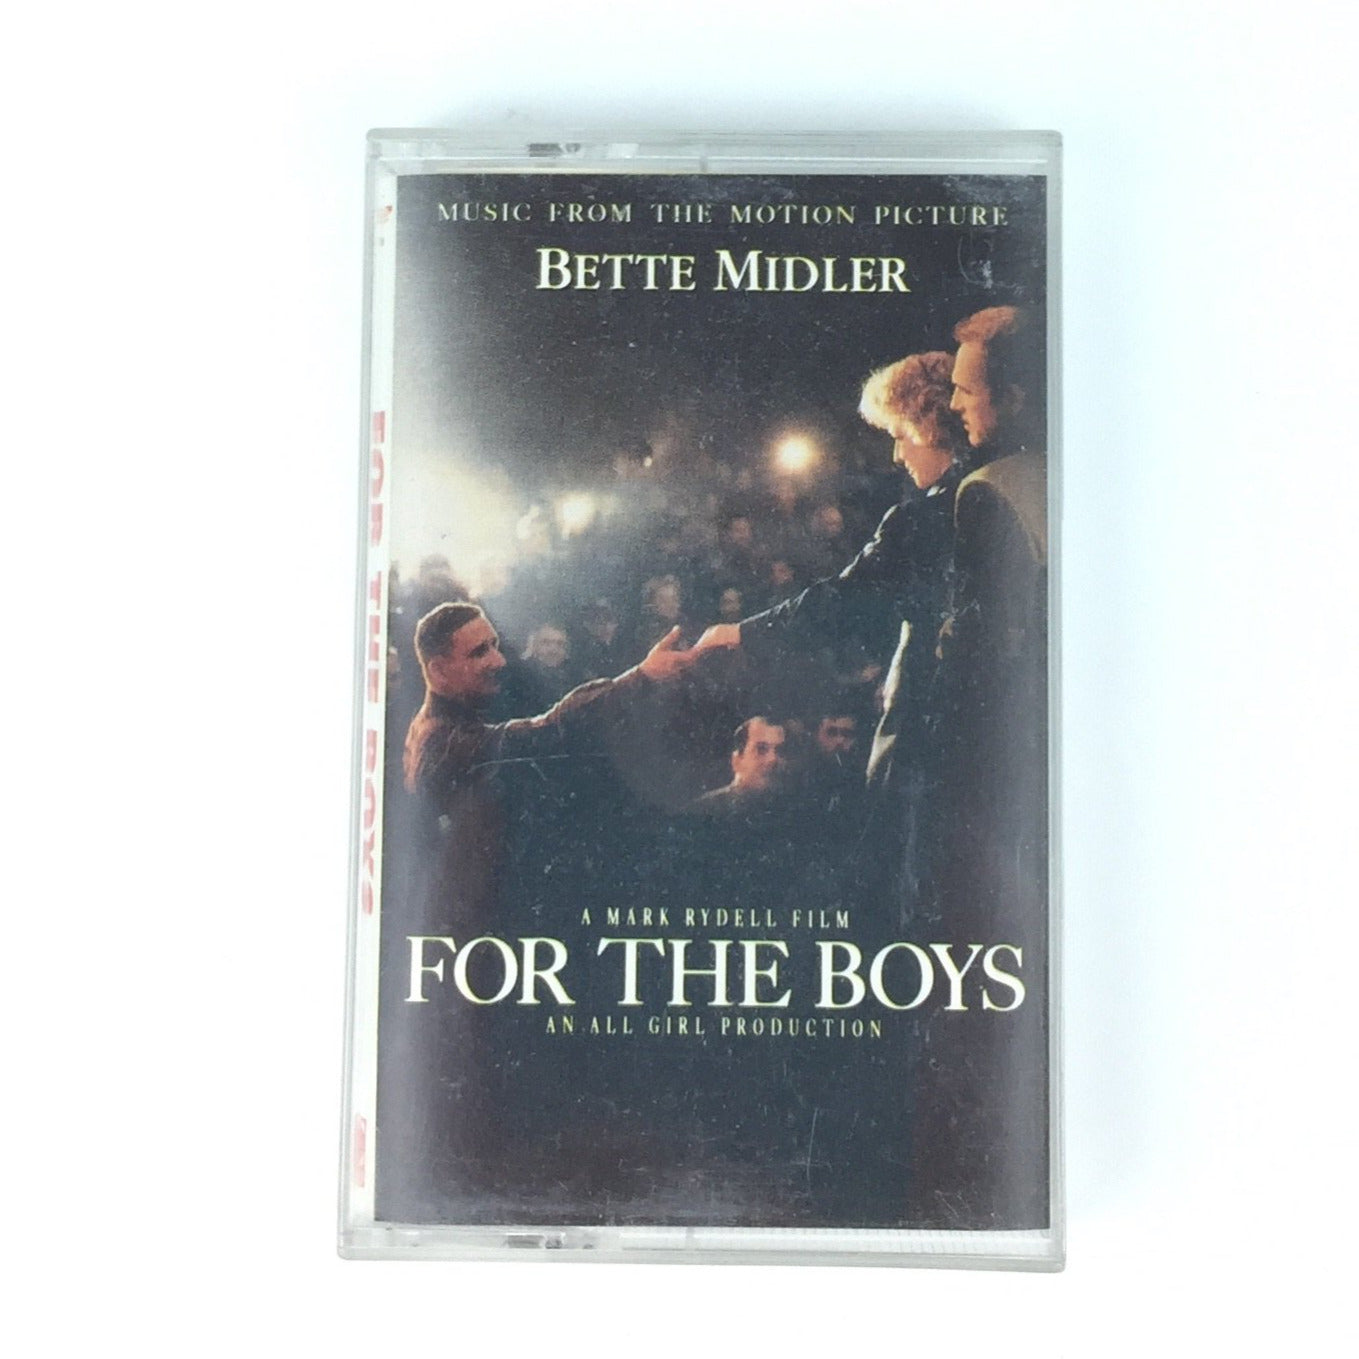 For The Boys Soundtrack - Bette Miller - Audio Cassette Tape